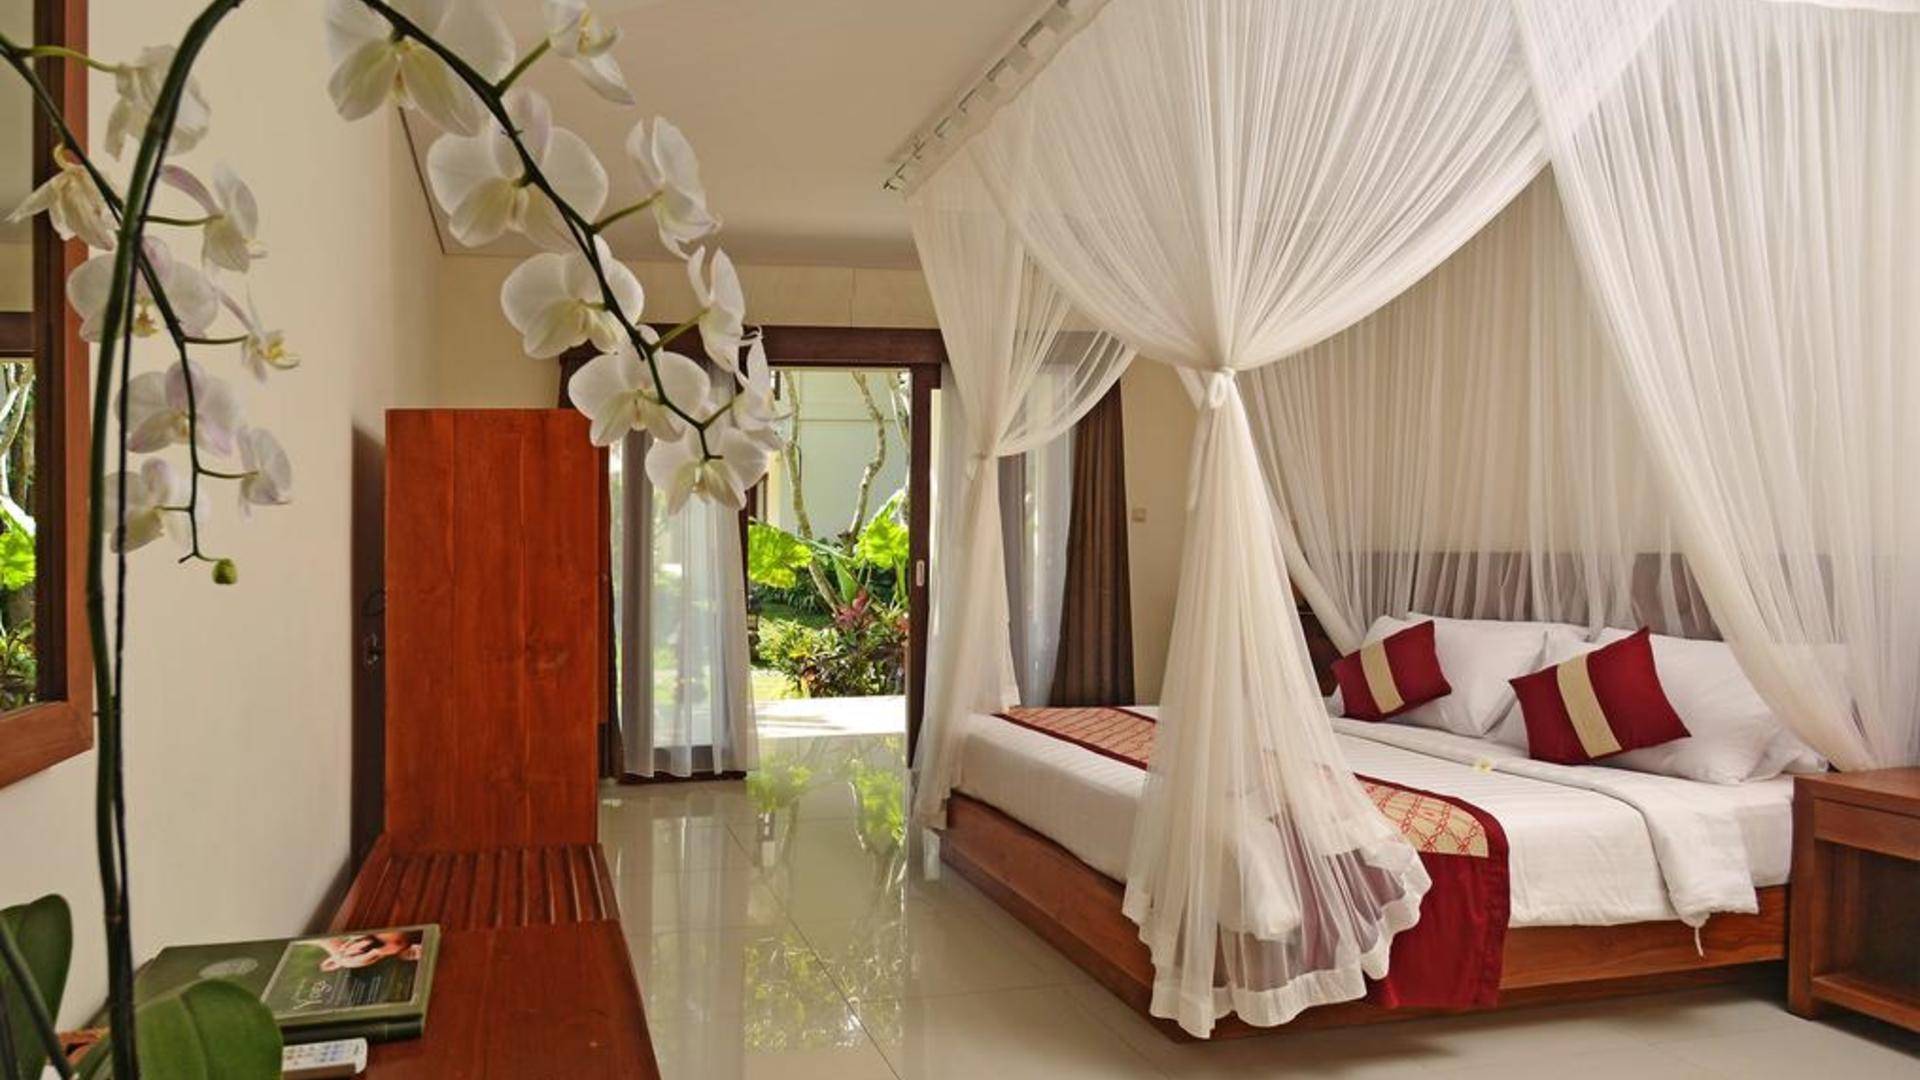 Отель pertiwi resort & spa 3*** (убуд / индонезия) - отзывы туристов о гостинице описание номеров с фото